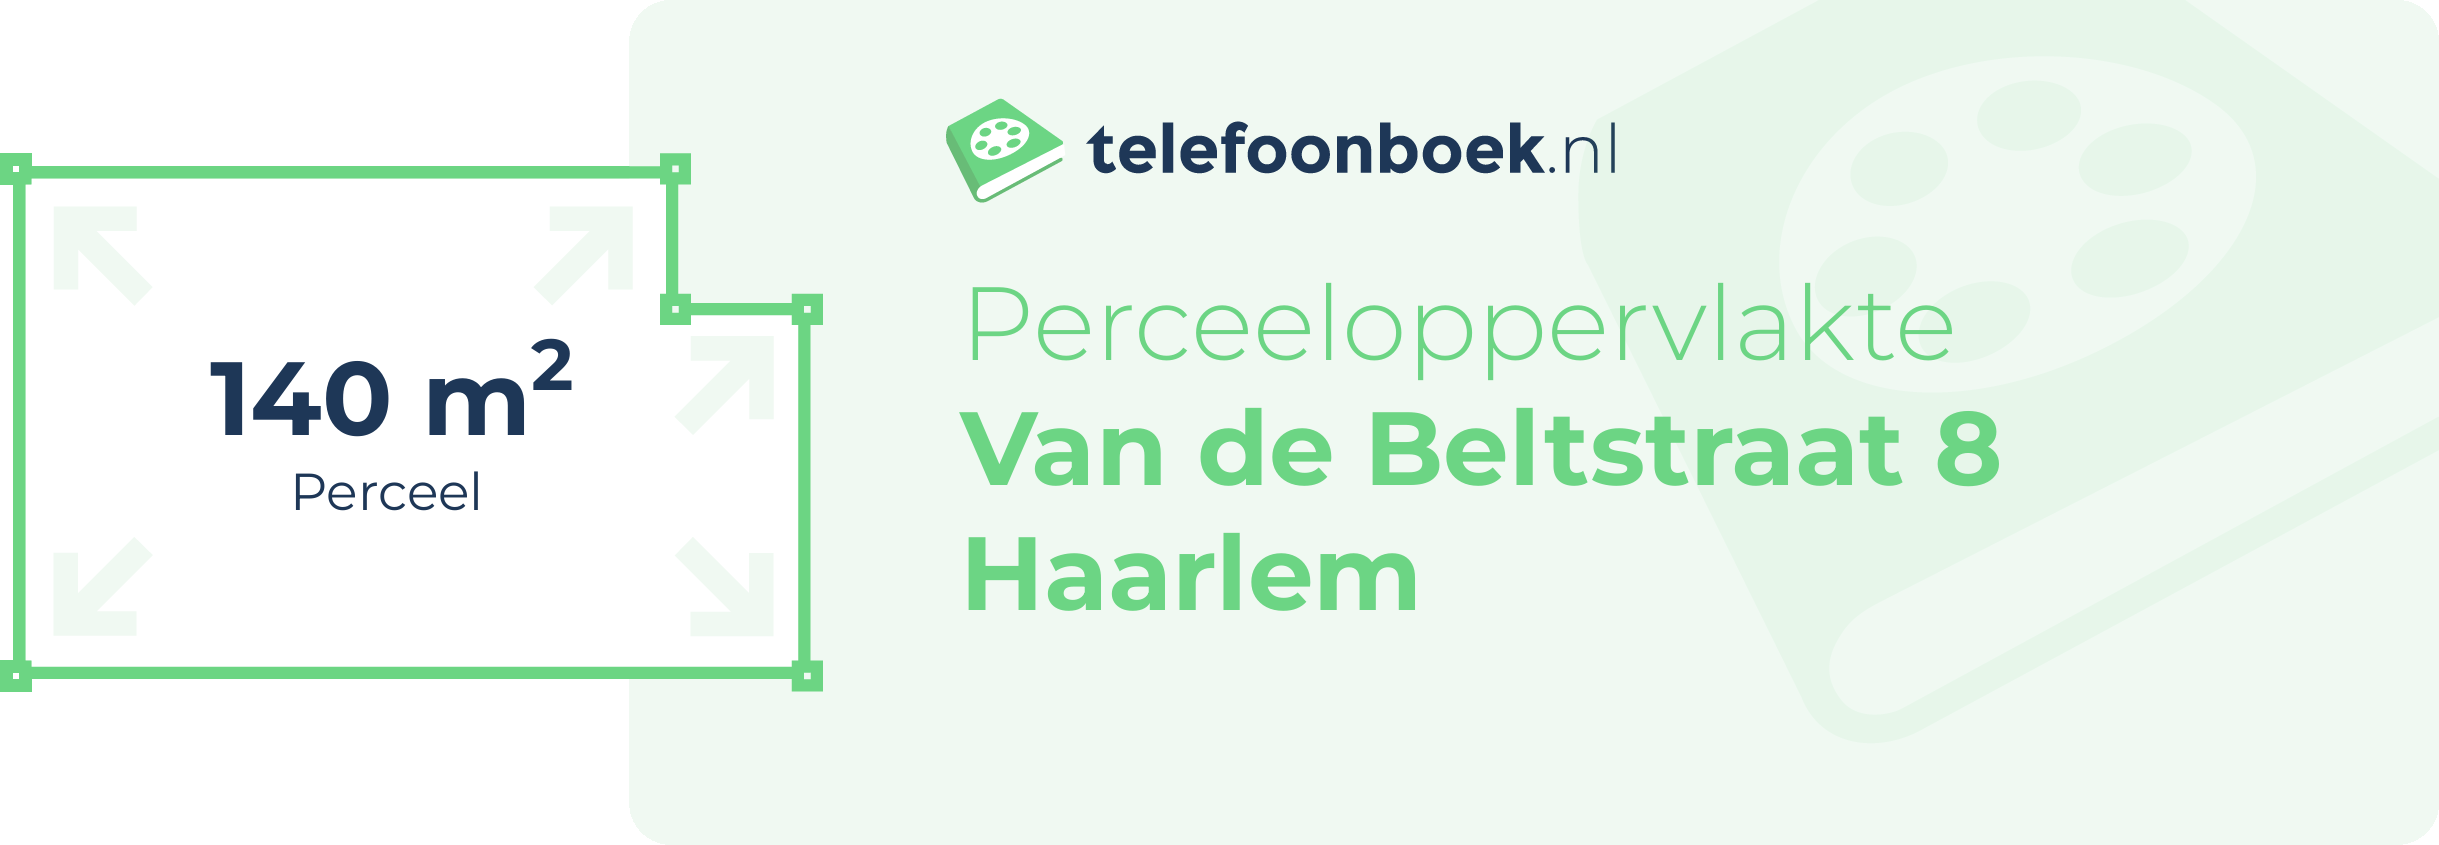 Perceeloppervlakte Van De Beltstraat 8 Haarlem